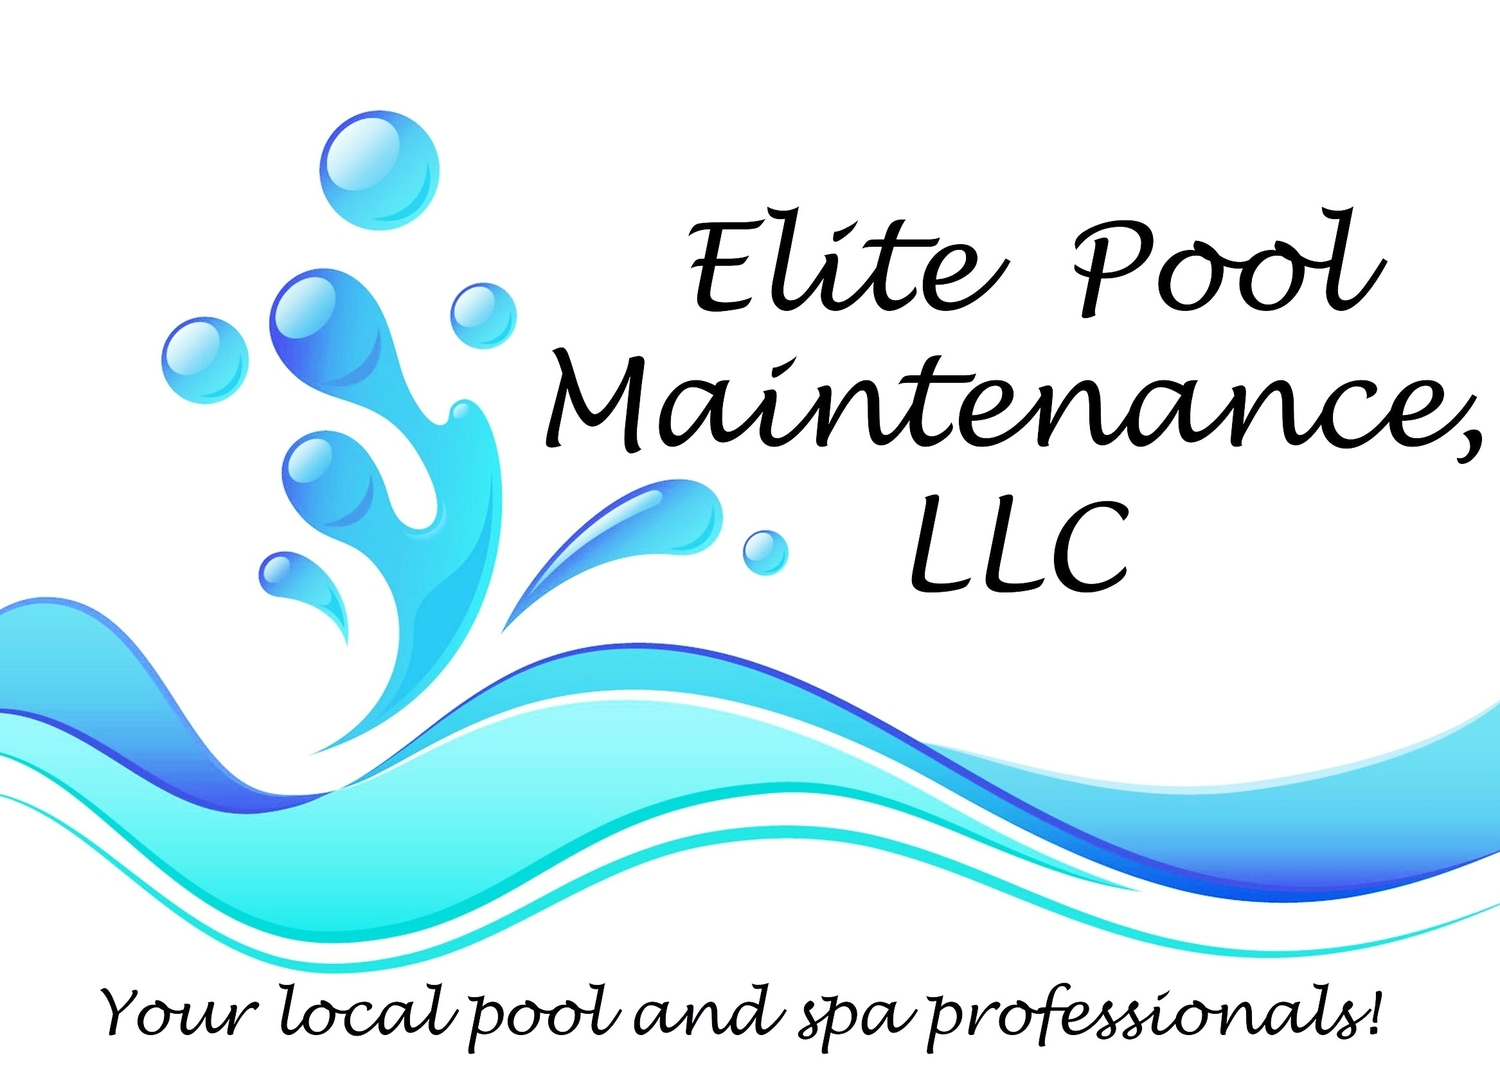 Elite Pool Maintenance